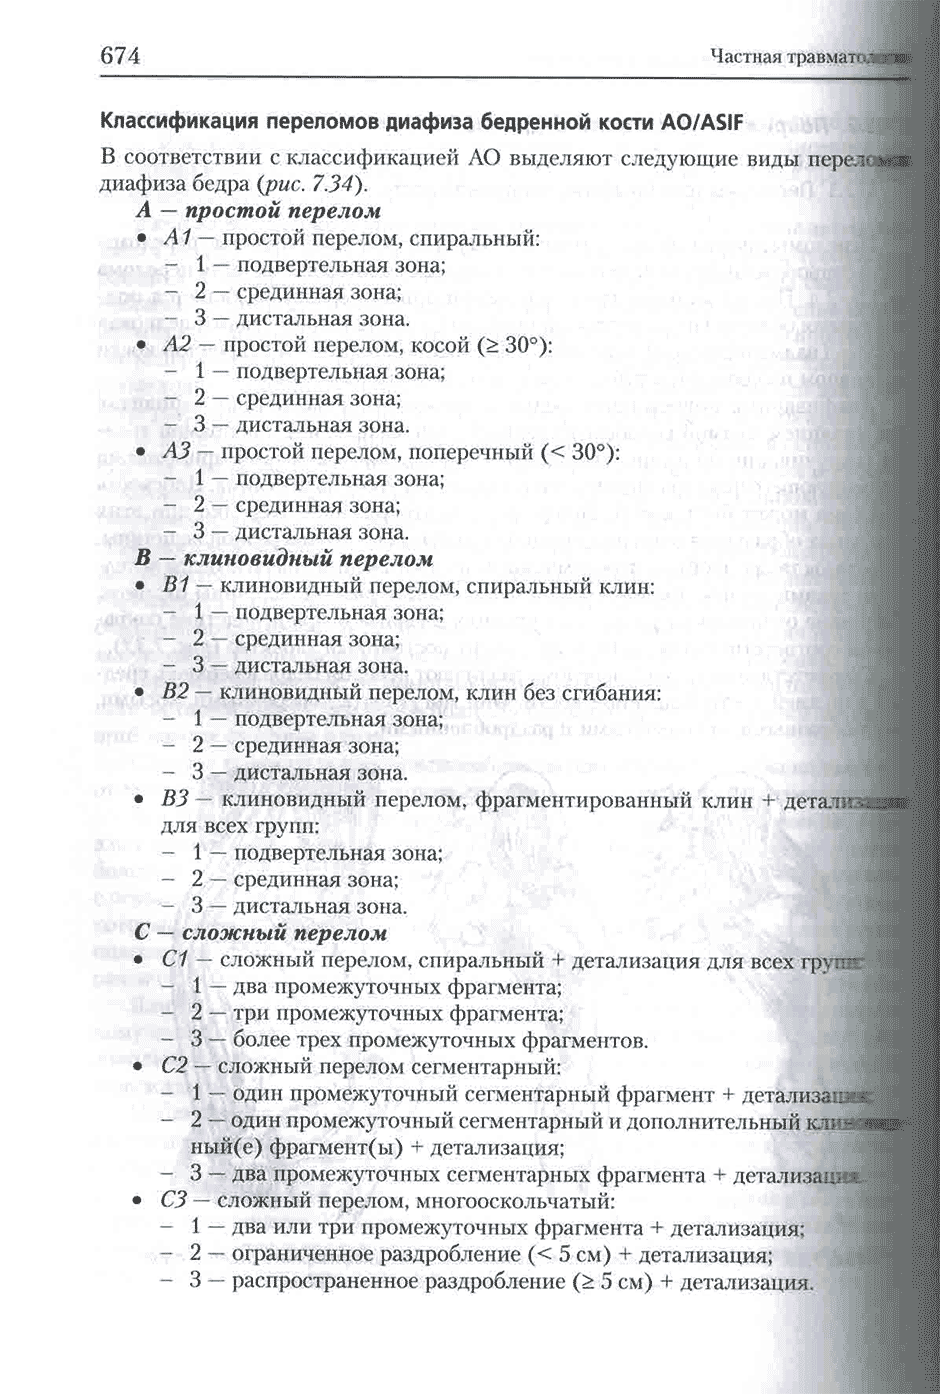 Пример страницы из книги "Травматология и ортопедия. комплект в 3-х томах" - Черкашина З. А. Том 2